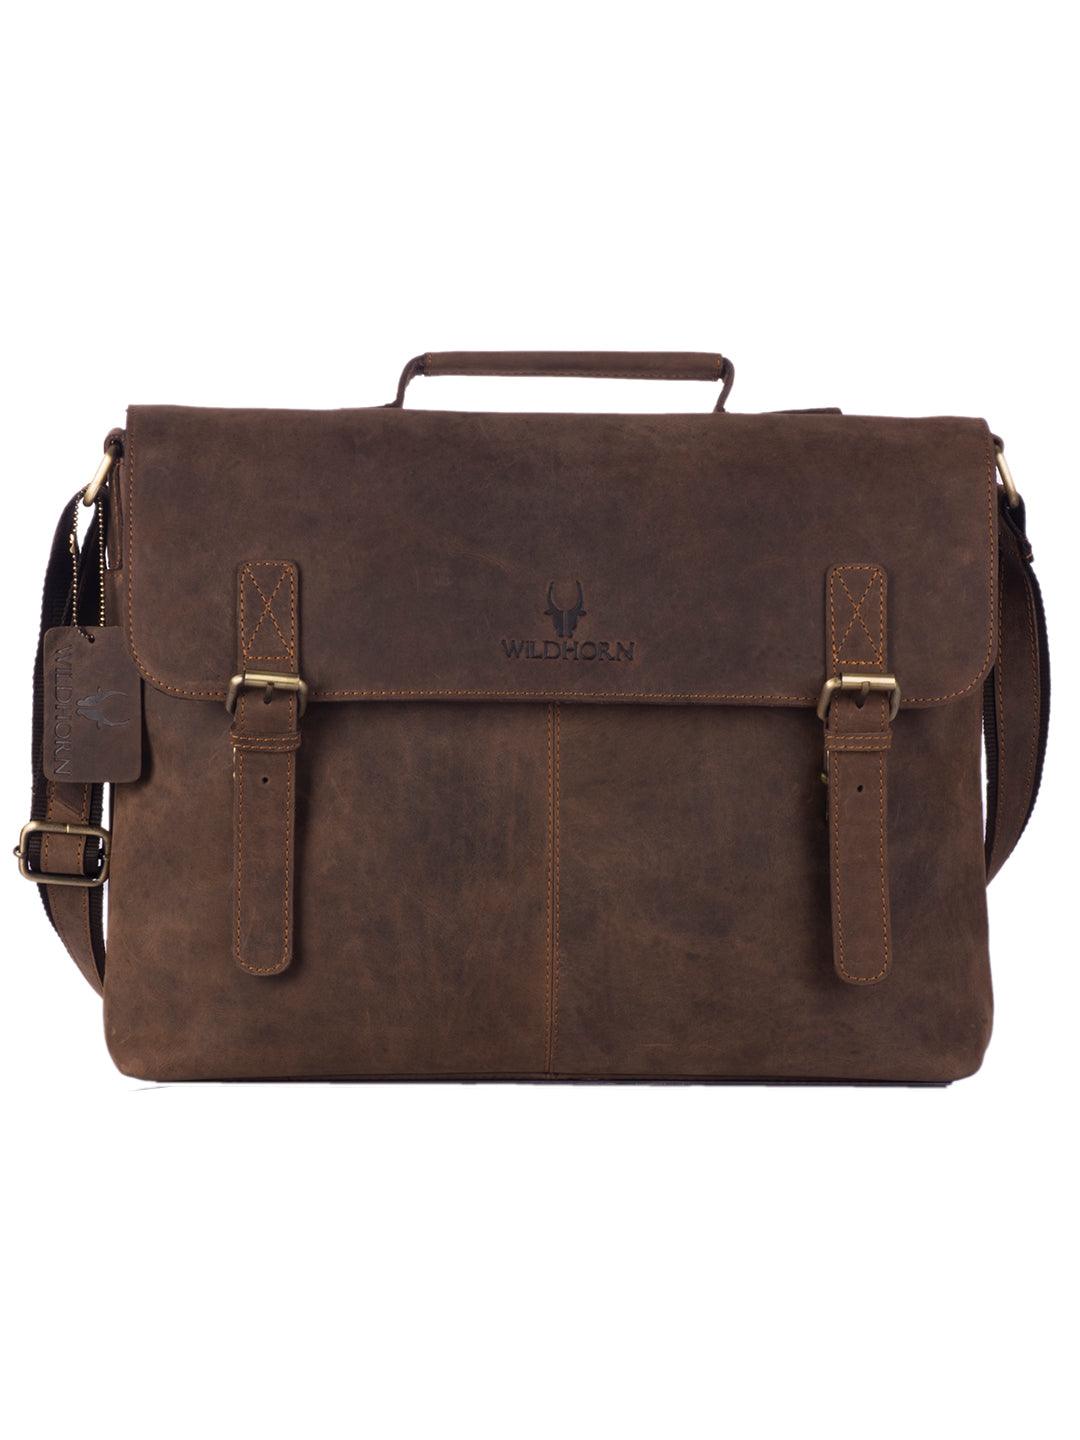 WILDHORN® 100% Genuine Leather Laptop Bag for Men